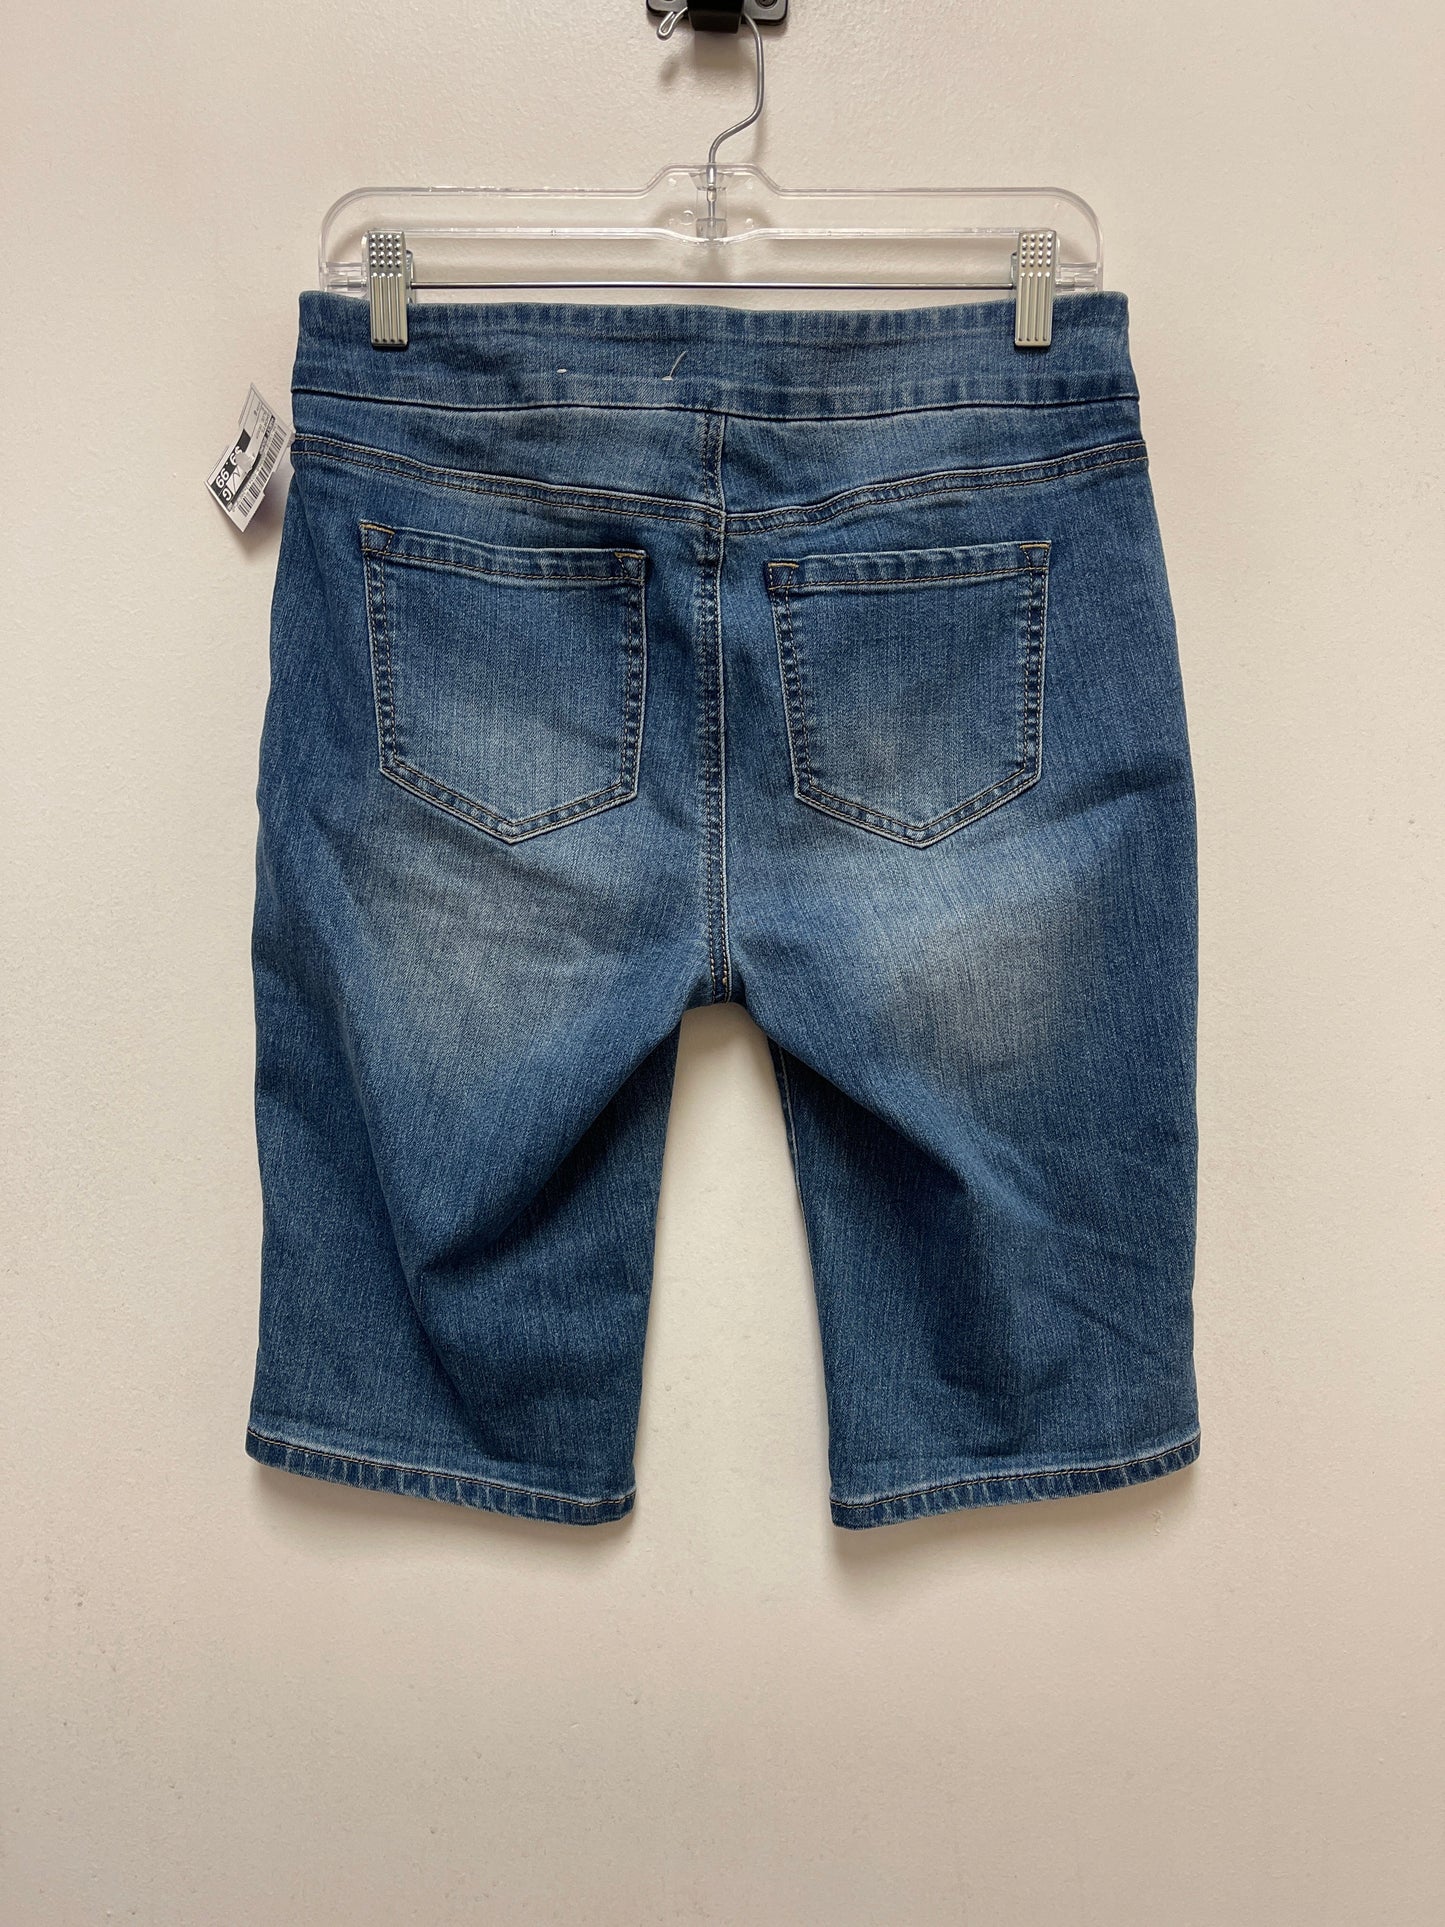 Blue Denim Shorts West Bound, Size 6